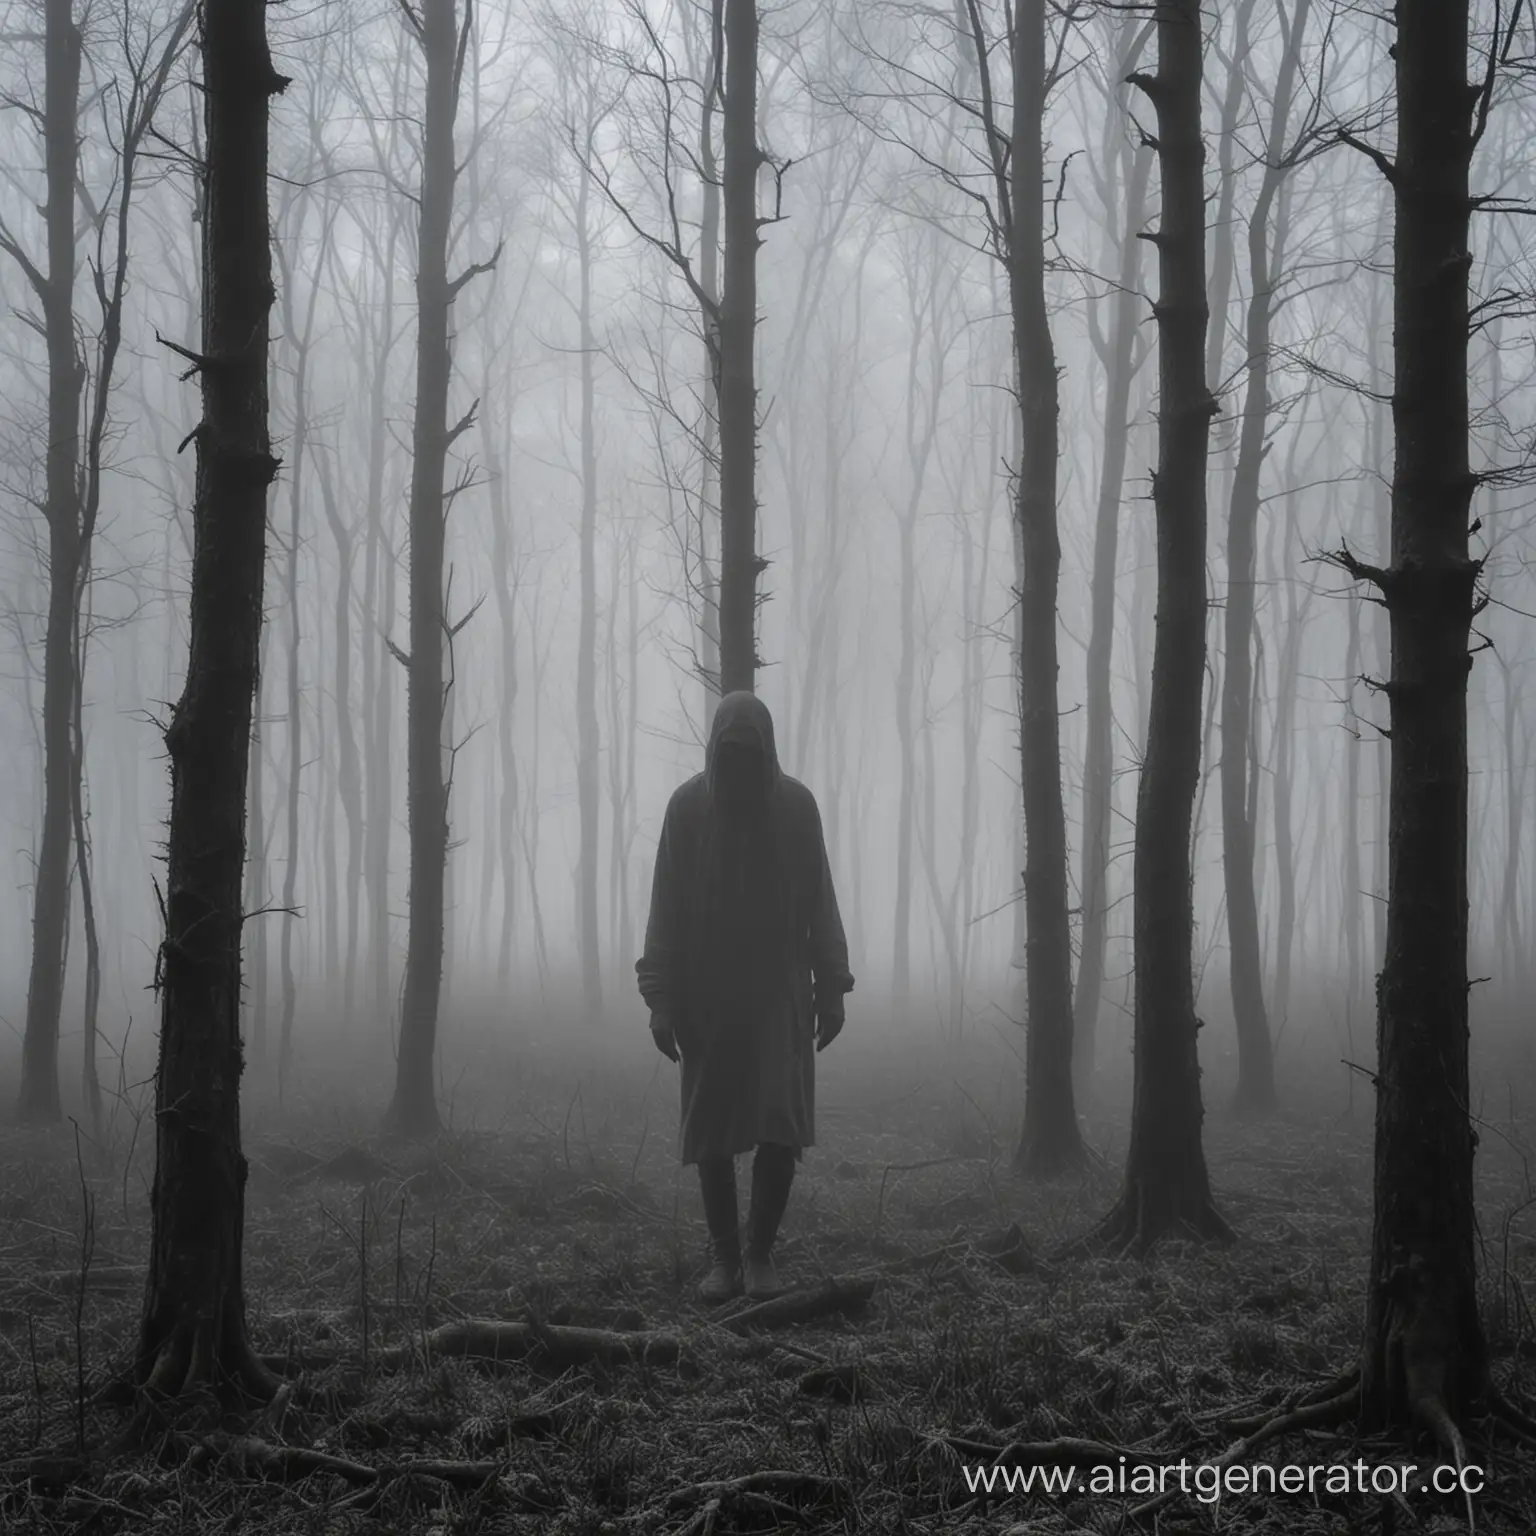 пейзажа старого леса, погруженного в густой туман. из мглы появляется загадочный мужчина, чье лицо покрыто тенью.